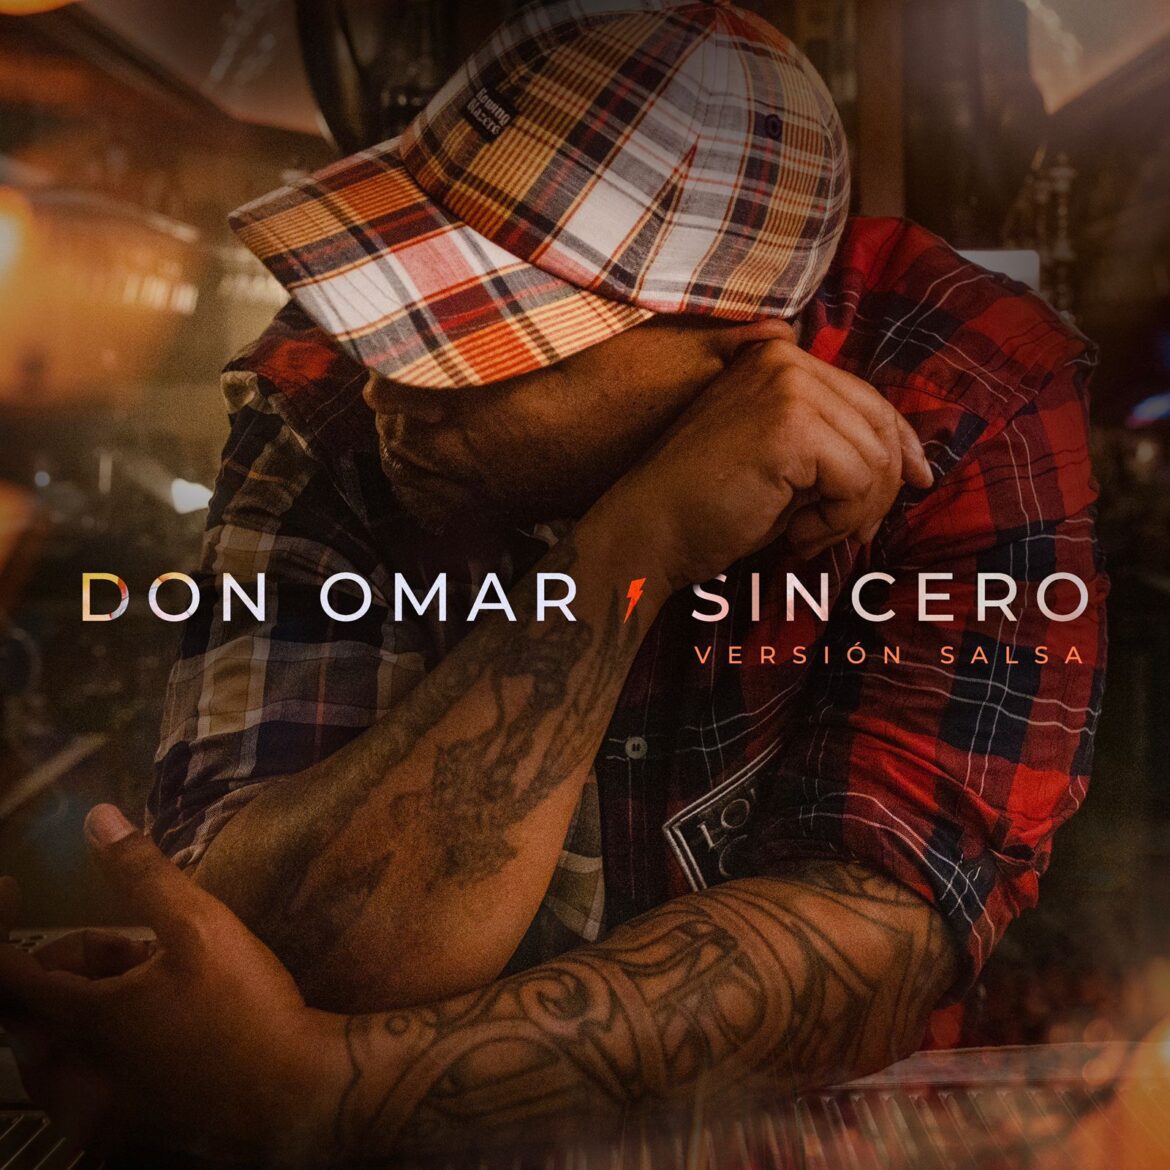 Don Omar presenta su éxito “Sincero” en versión salsa